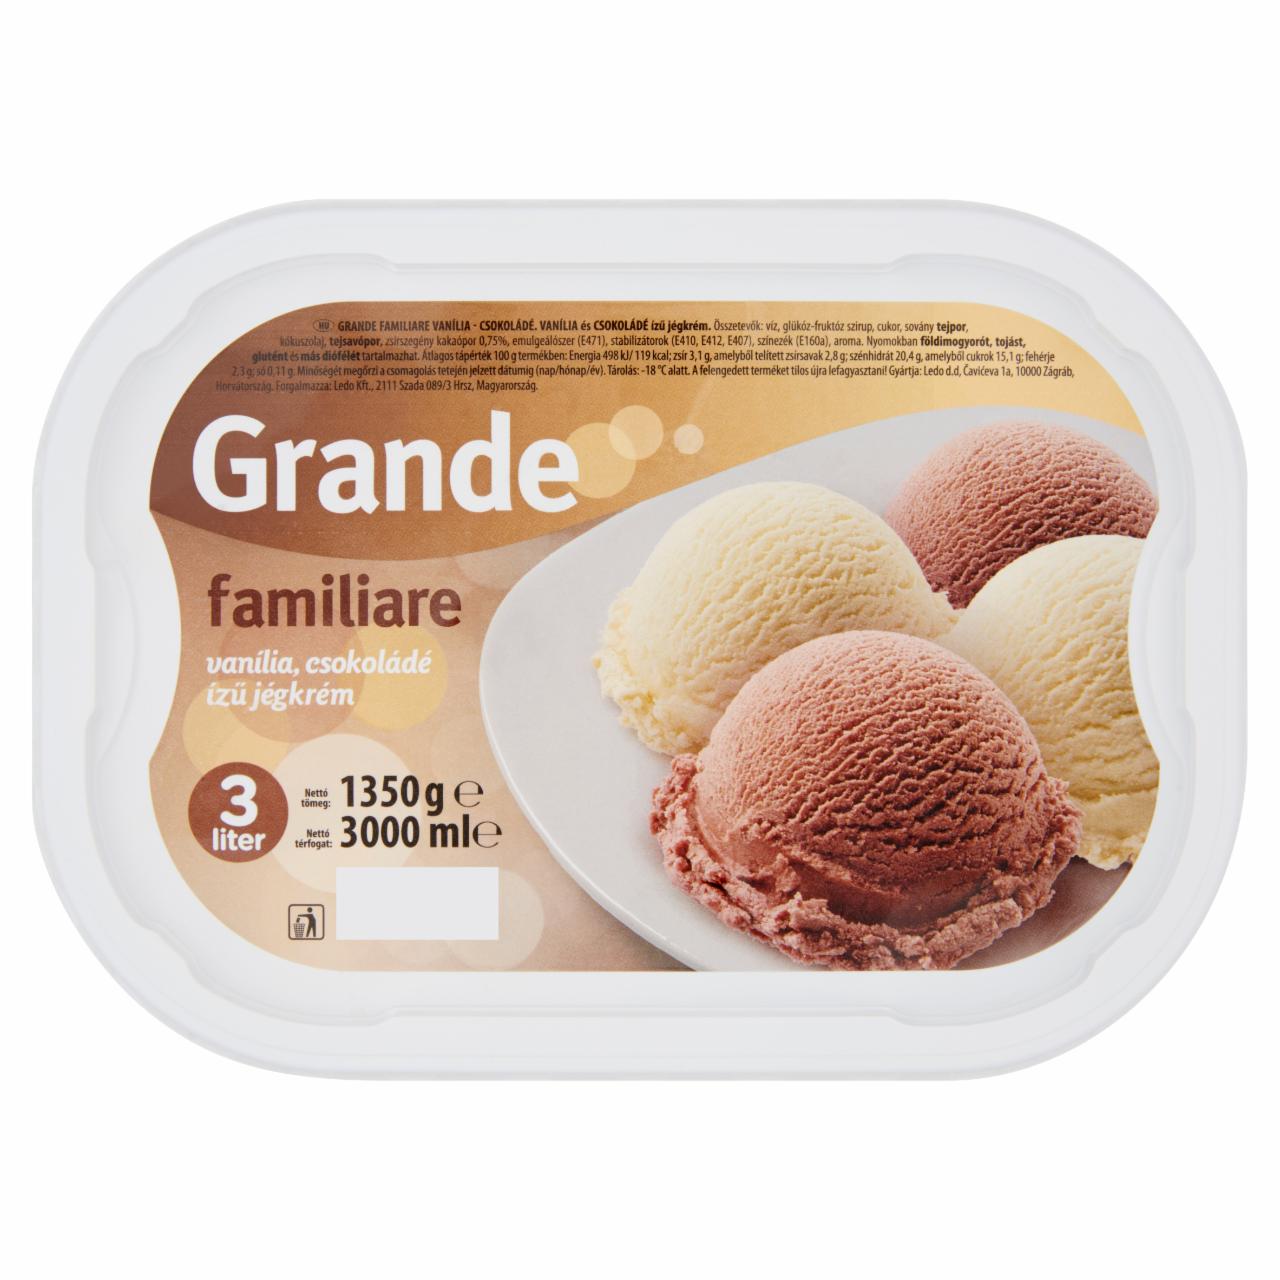 Képek - Grande Familiare vanília és csokoládé ízű jégkrém 3 l